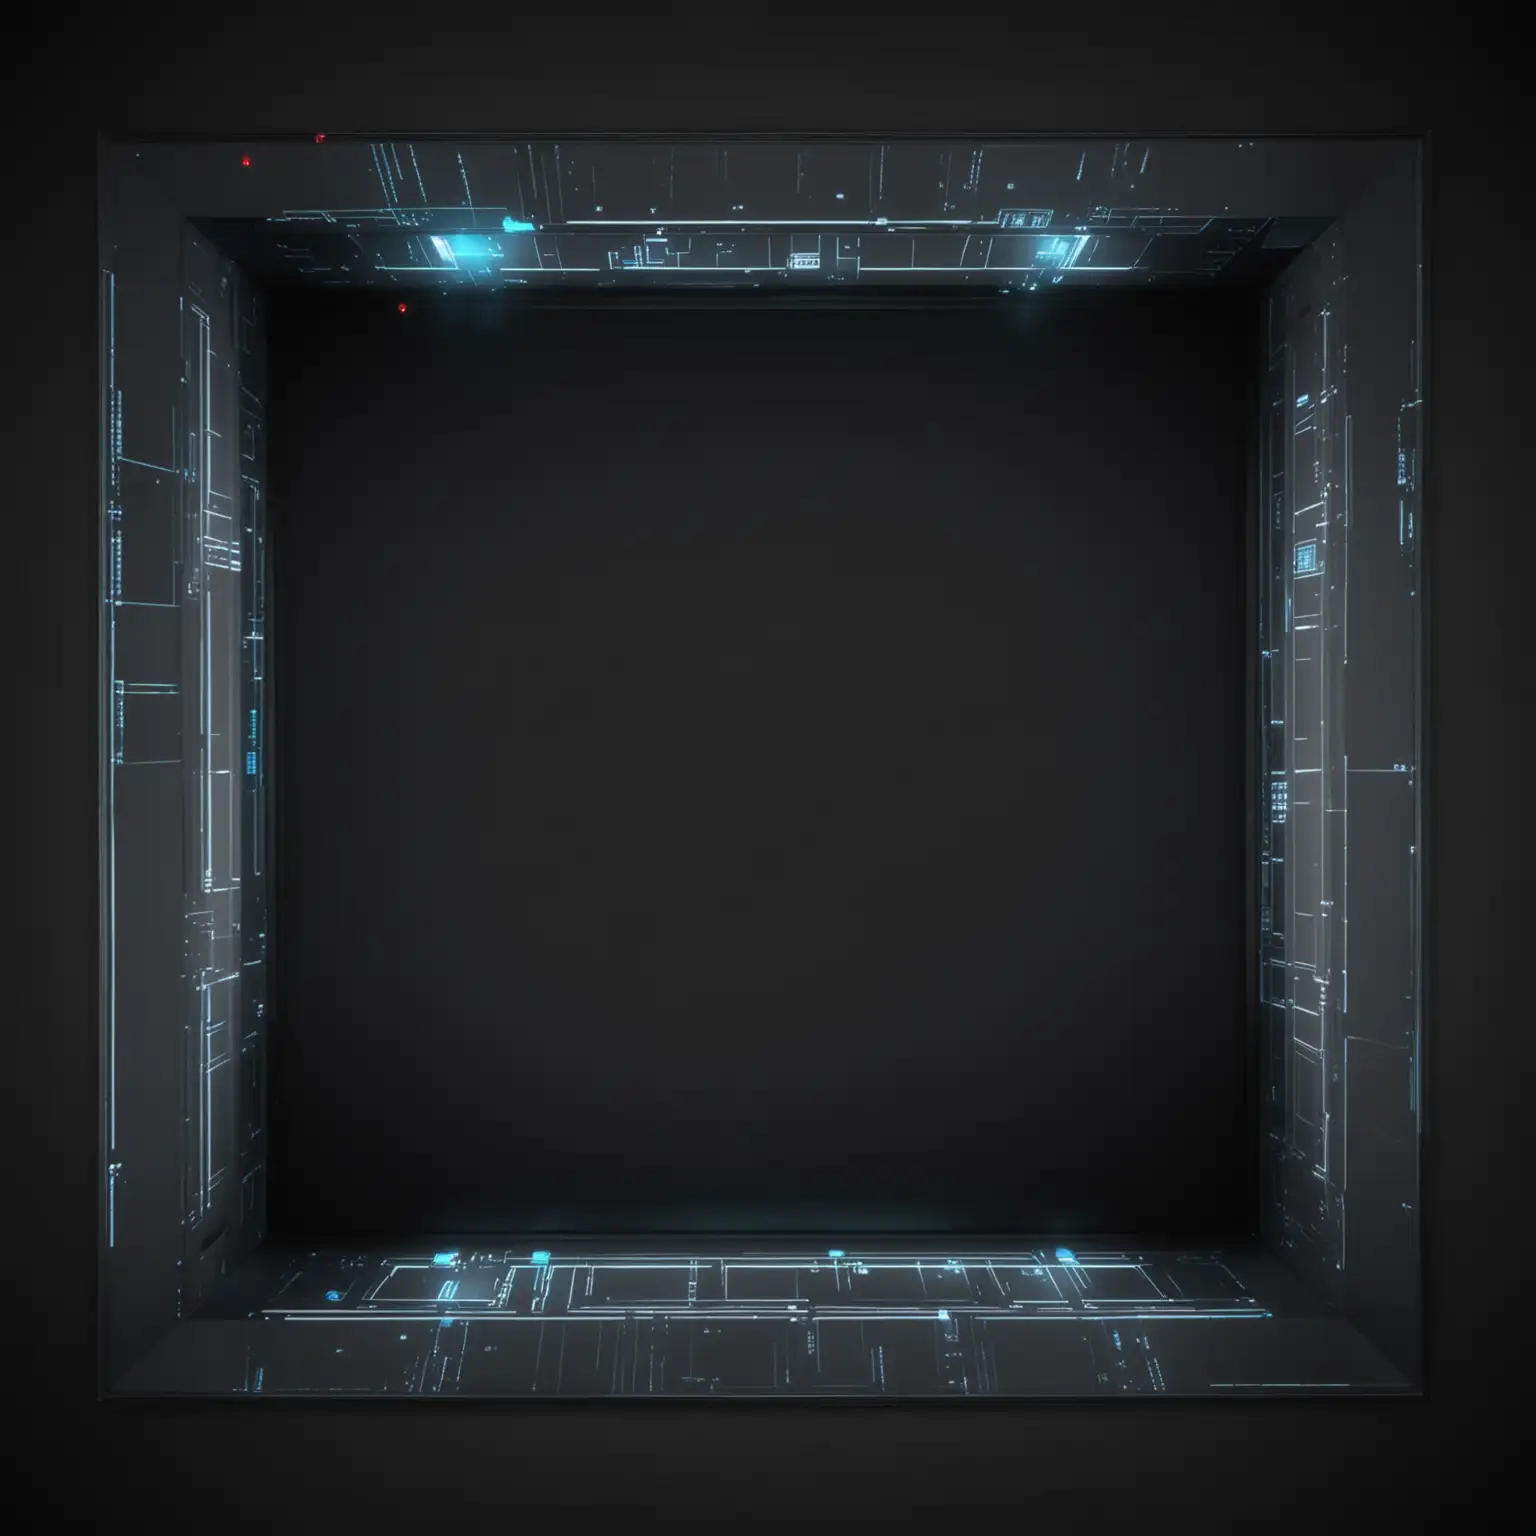 hologram black screen floor top view